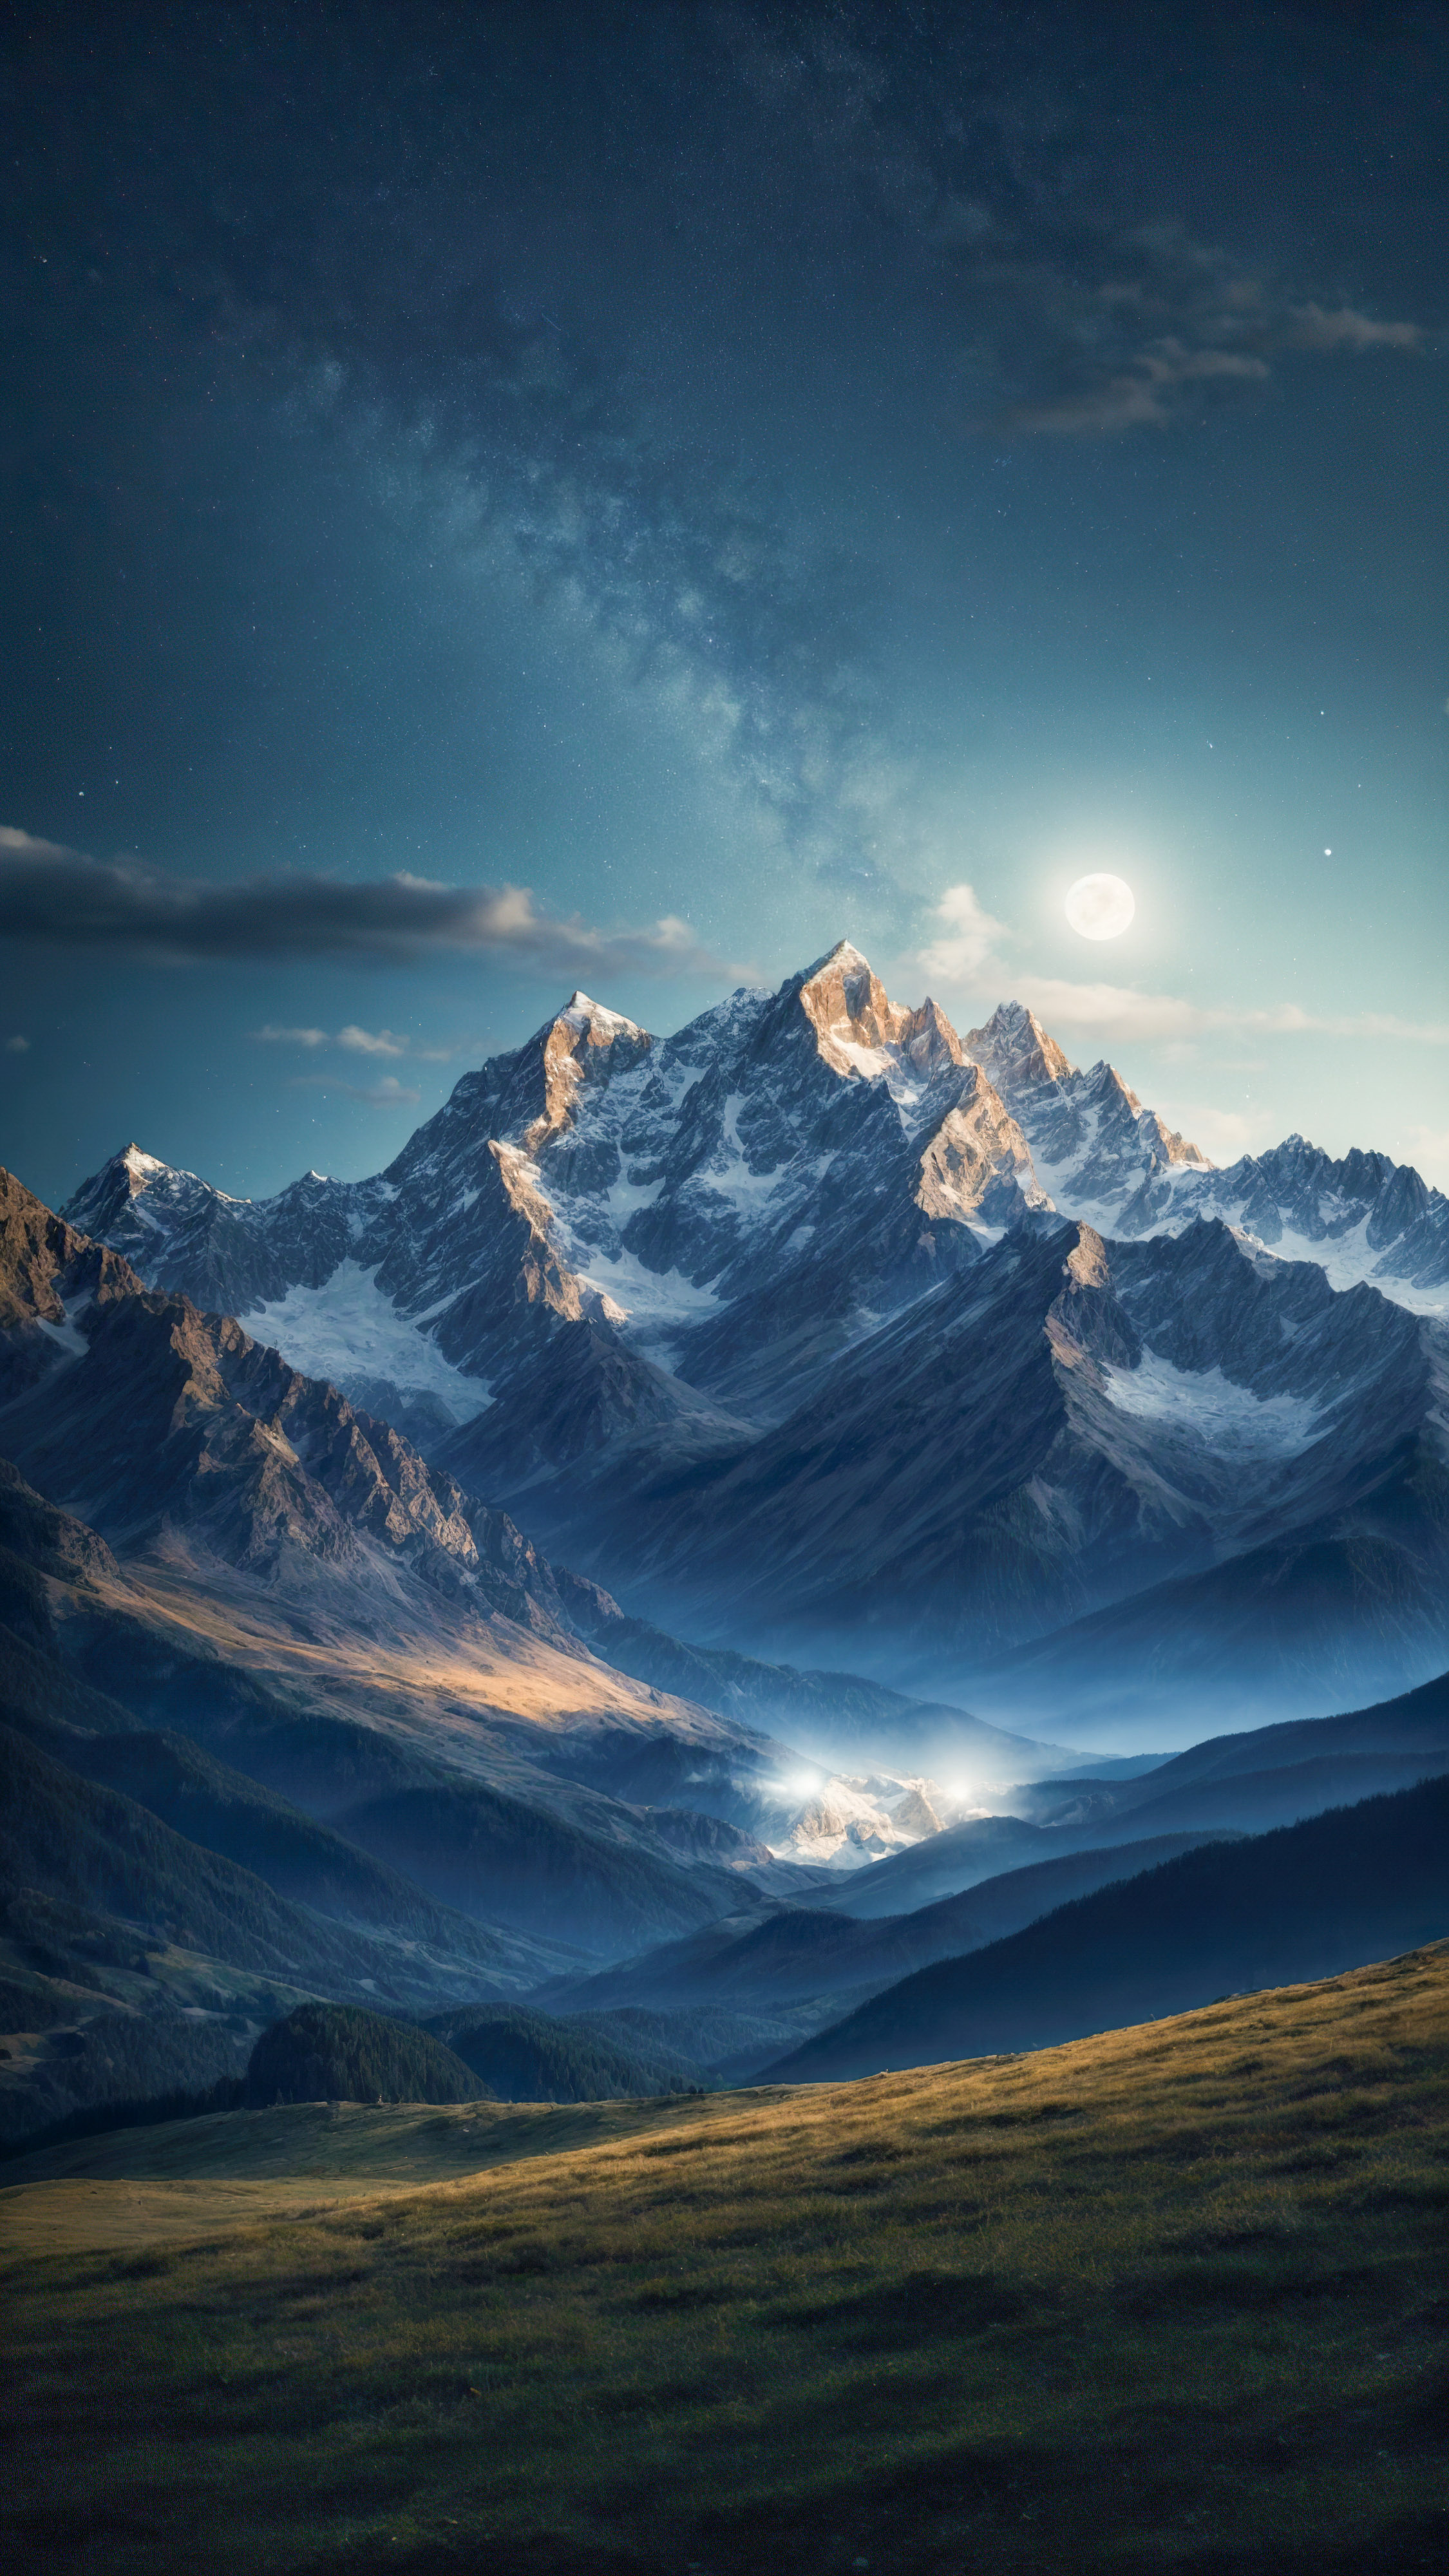 Capturez l'essence d'un ciel étoilé sur les montagnes, avec une lune brillante et une étoile filante, avec ces fonds d'écran uniques pour iPhone.